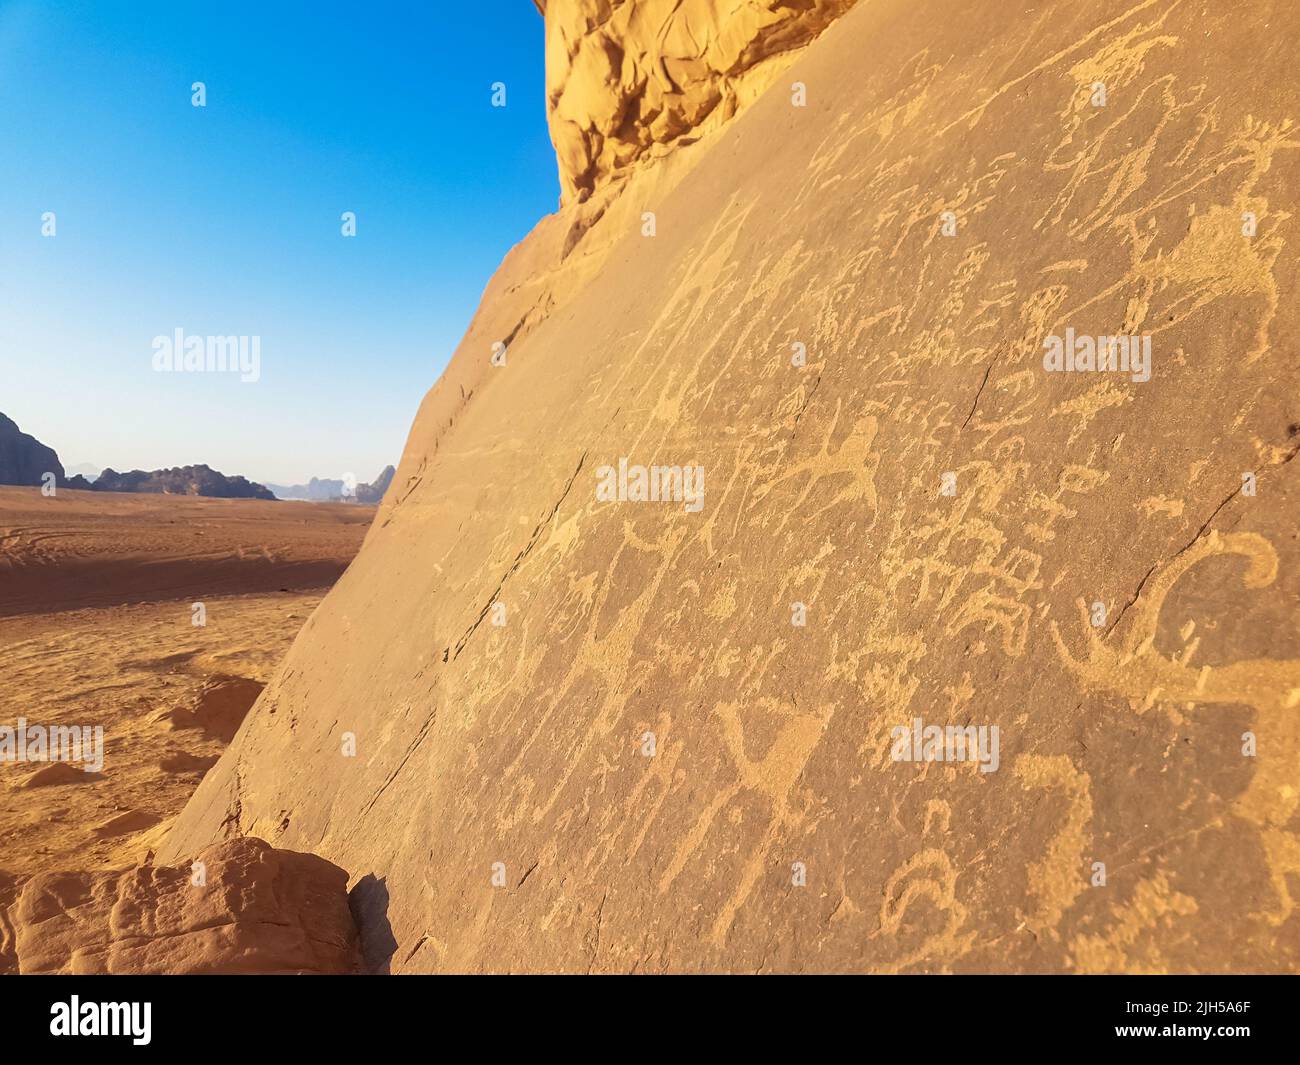 Roche de grès avec art préhistorique. La civilisation préhistorique a laissé ses dessins primitifs sur une falaise de calcaire dans le désert de Wadi Rum, en Jordanie. Banque D'Images